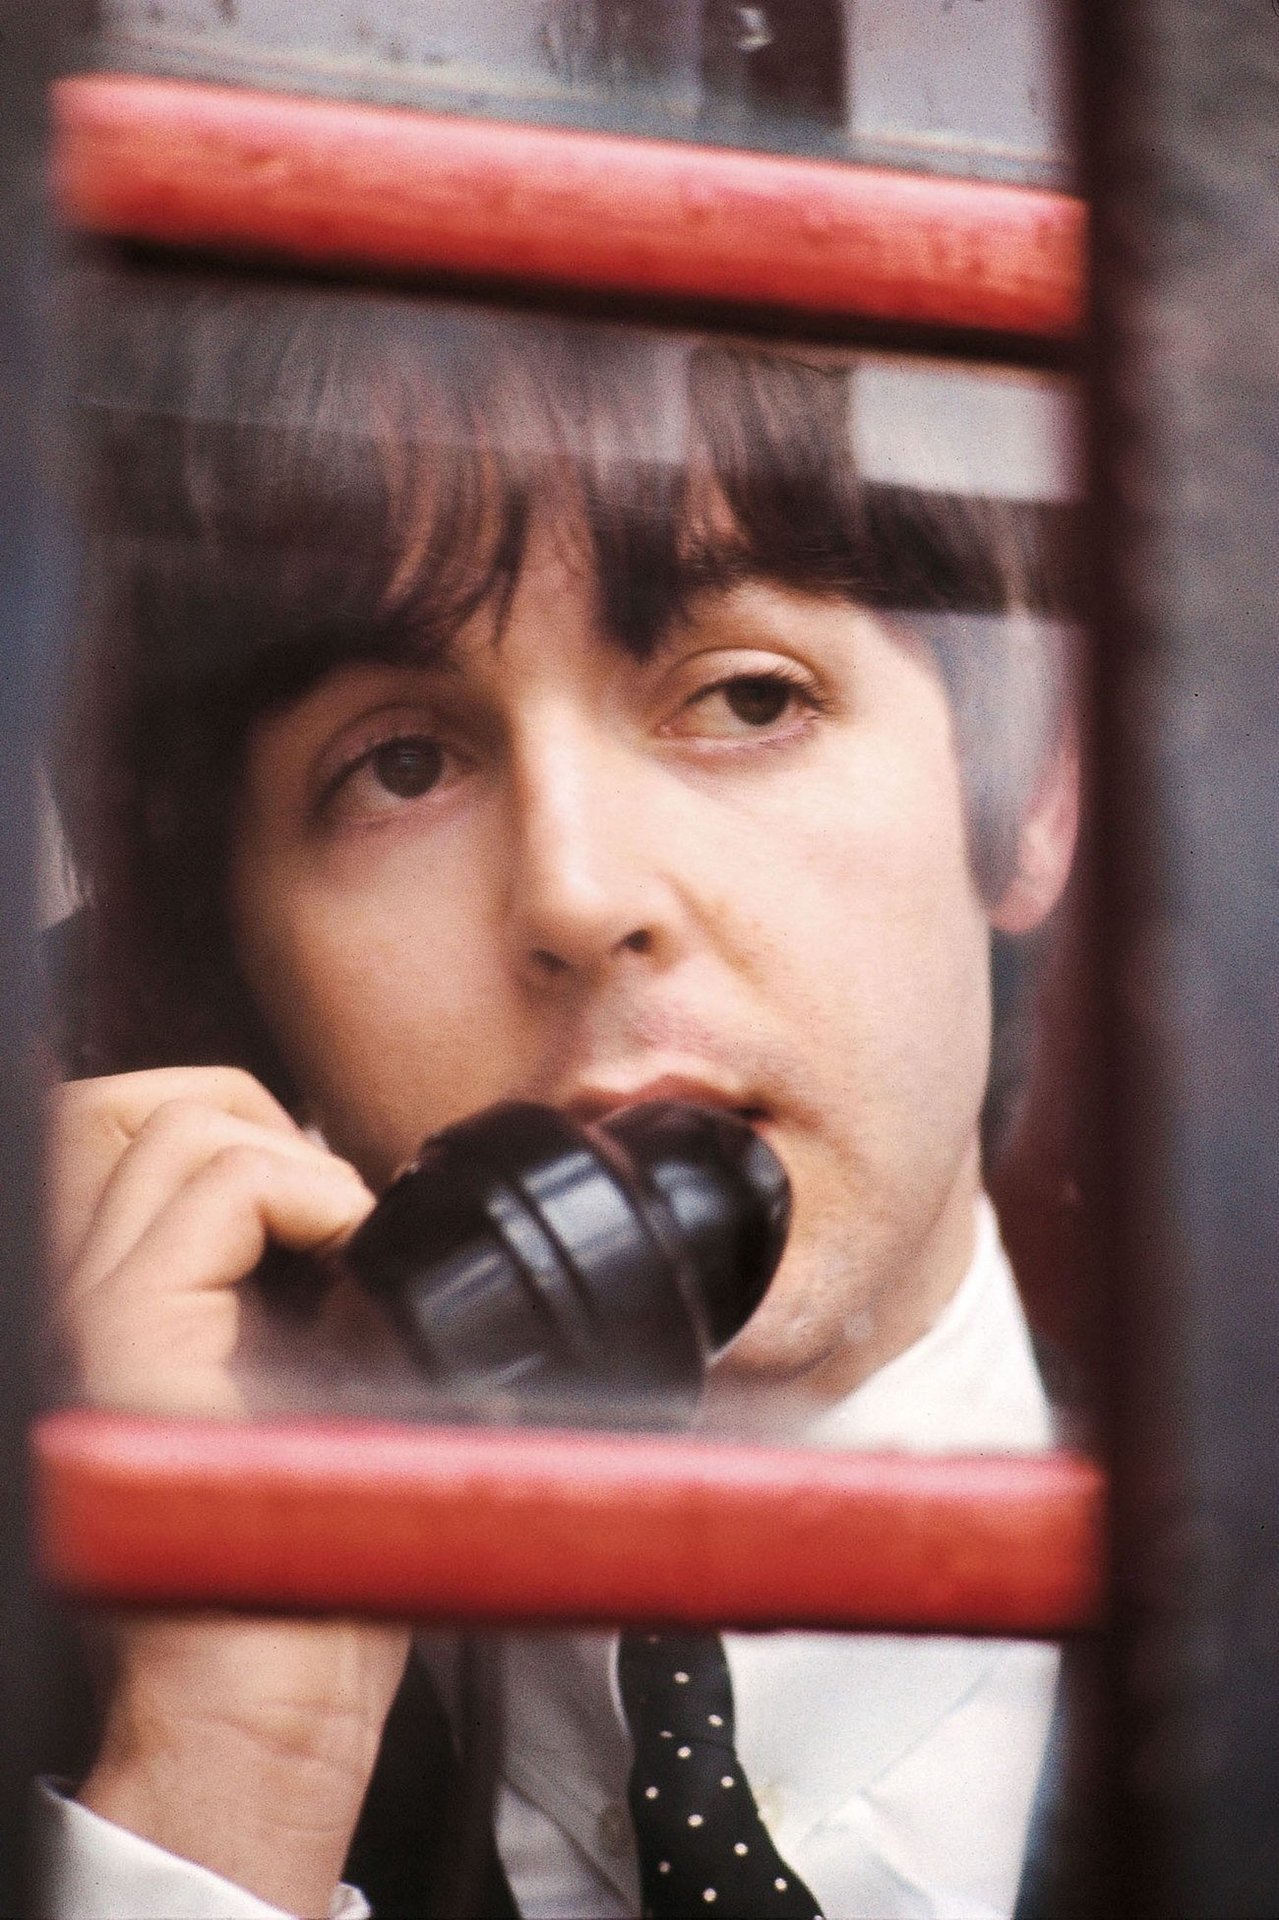 Paul McCartney On the phone, 1970s